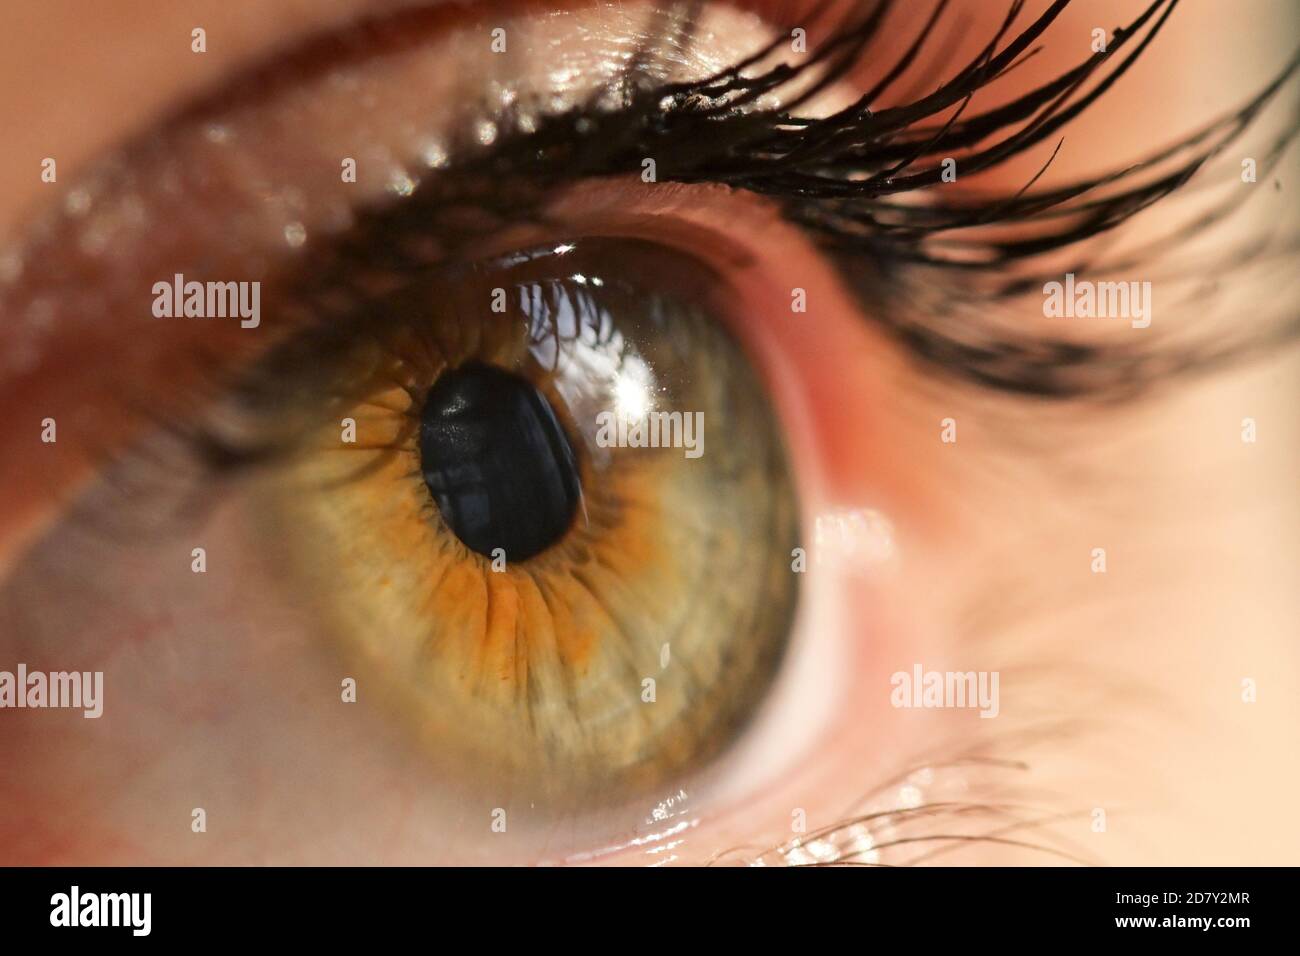 Détails de la vue macro Human Eye avec lumière naturelle Banque D'Images